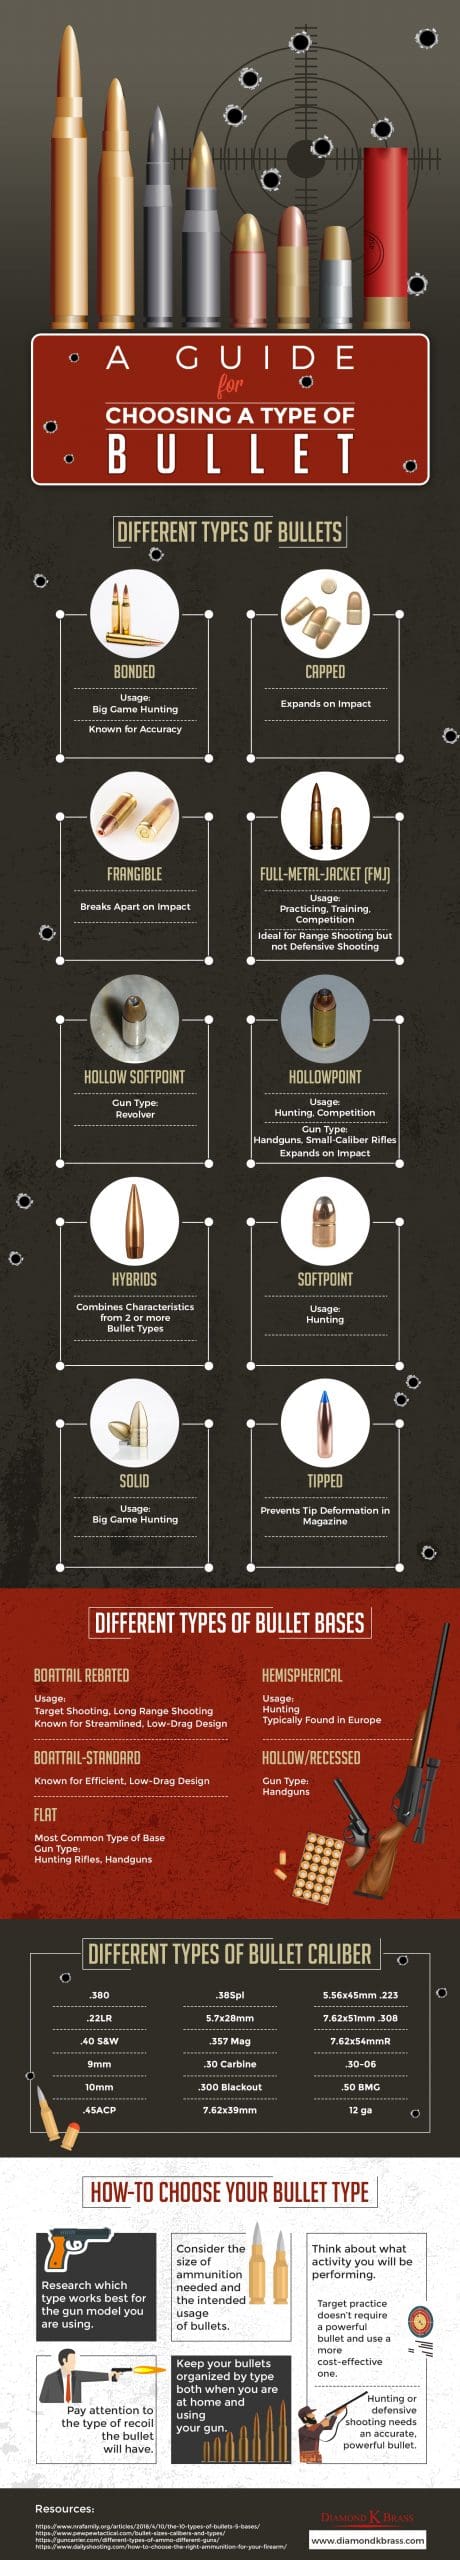 Diamond K Brass bullet guide infographic